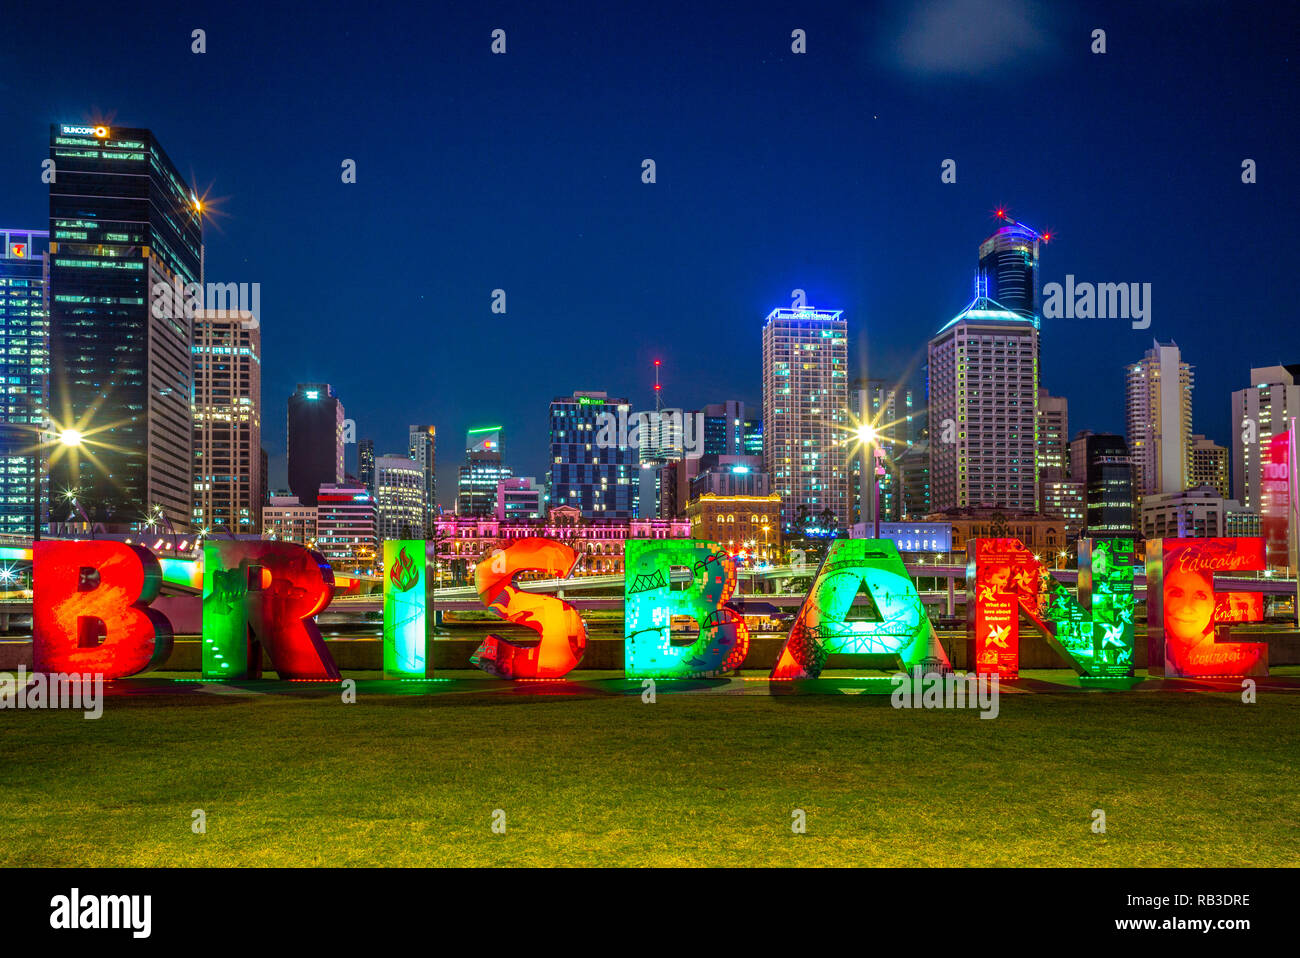 Brisbane, Australie - 25 décembre 2018 : skyline de Brisbane avec le G20 à South Bank Brisbane sign Banque D'Images